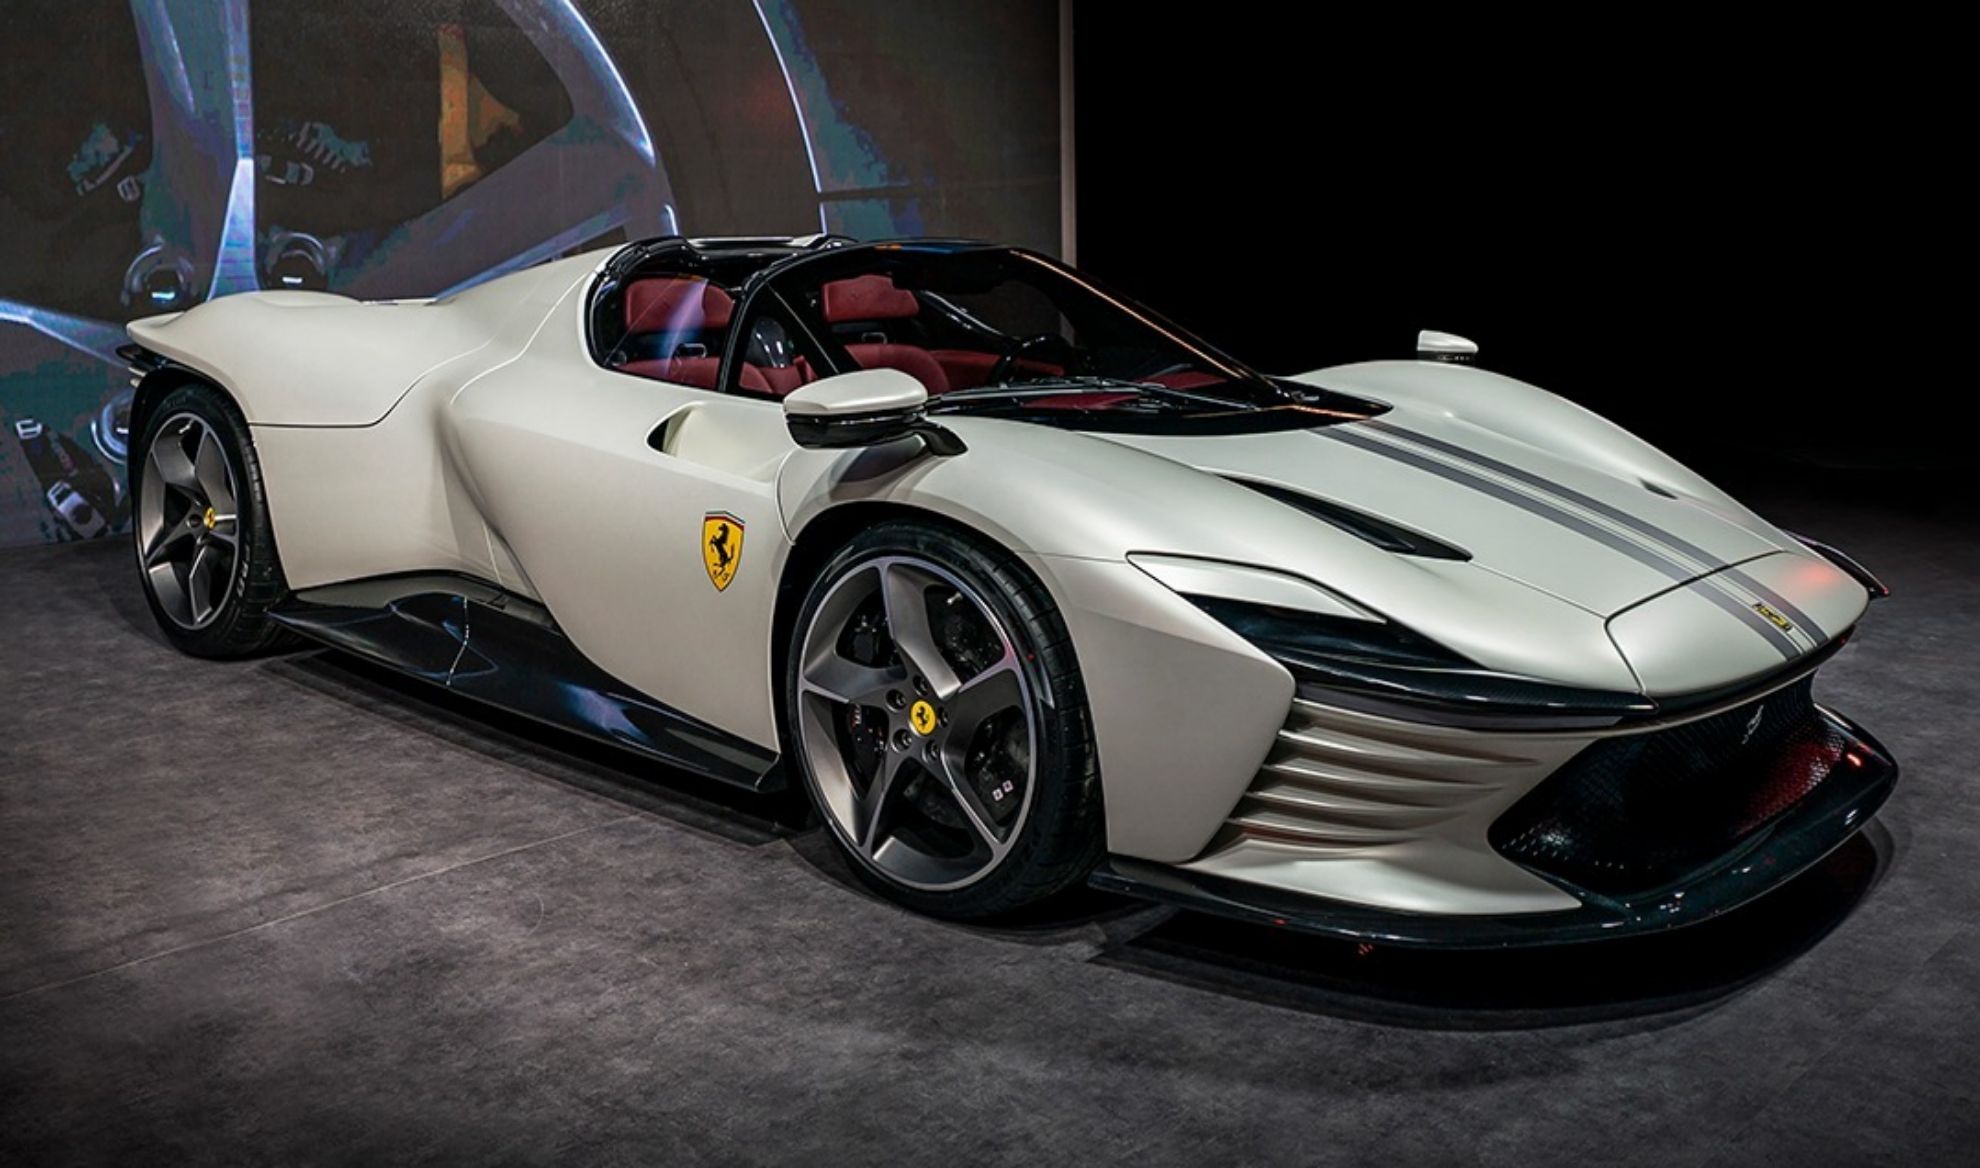 paga extra - bonus - 12.000 euros - Ferrari Purosangue - SUV - Ferrari Daytona SP3 - 2022 - 2023 - record de ventas